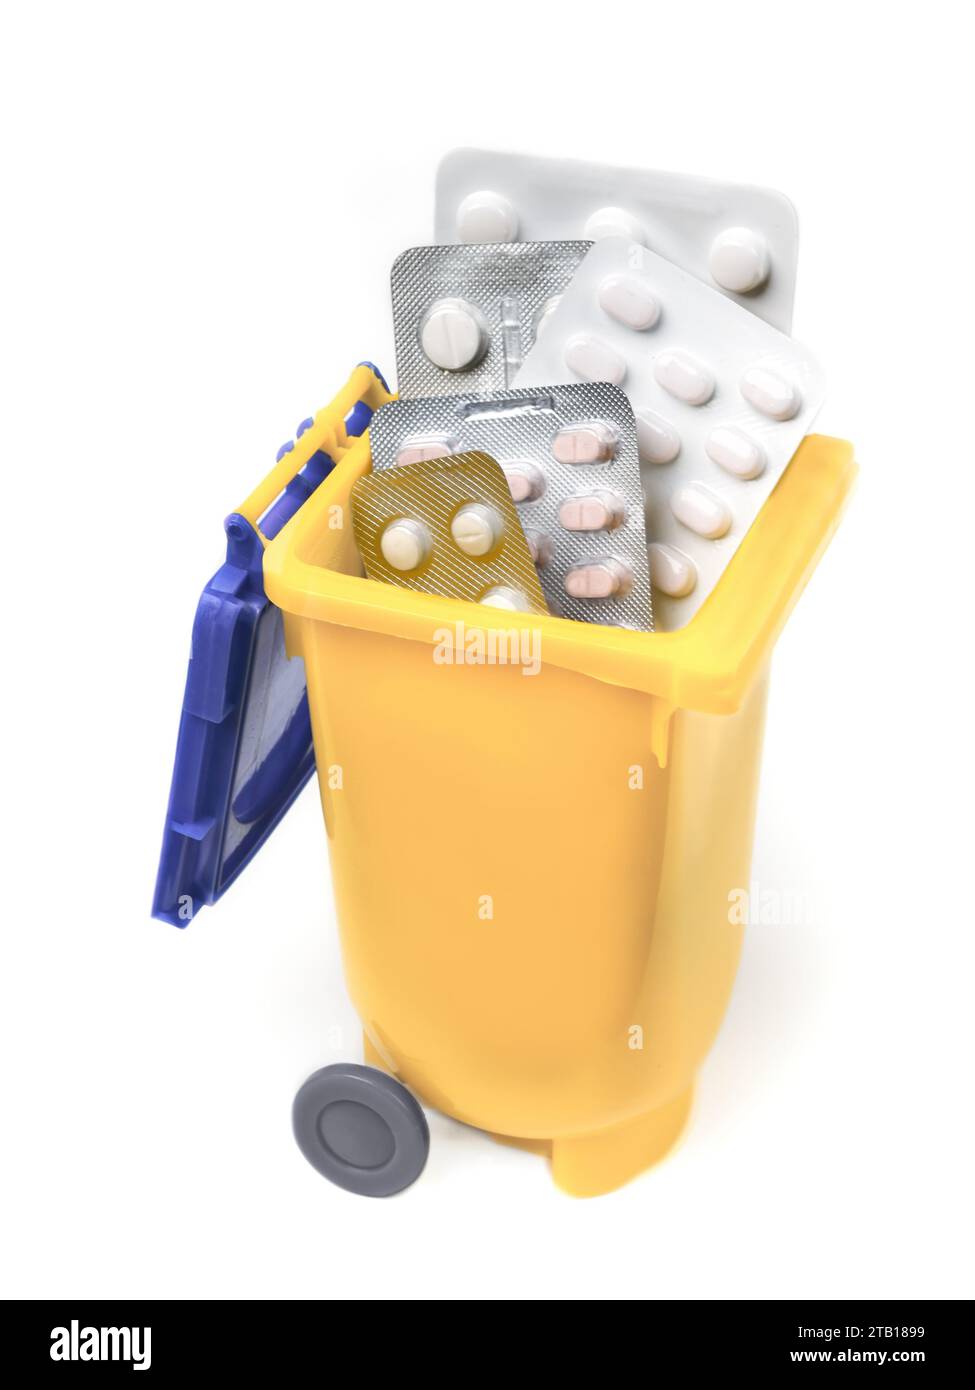 Pillen, Kapseln und Medikamente in gelben Mülleimern. Gesundes Lifestyle-Konzept. Stockfoto